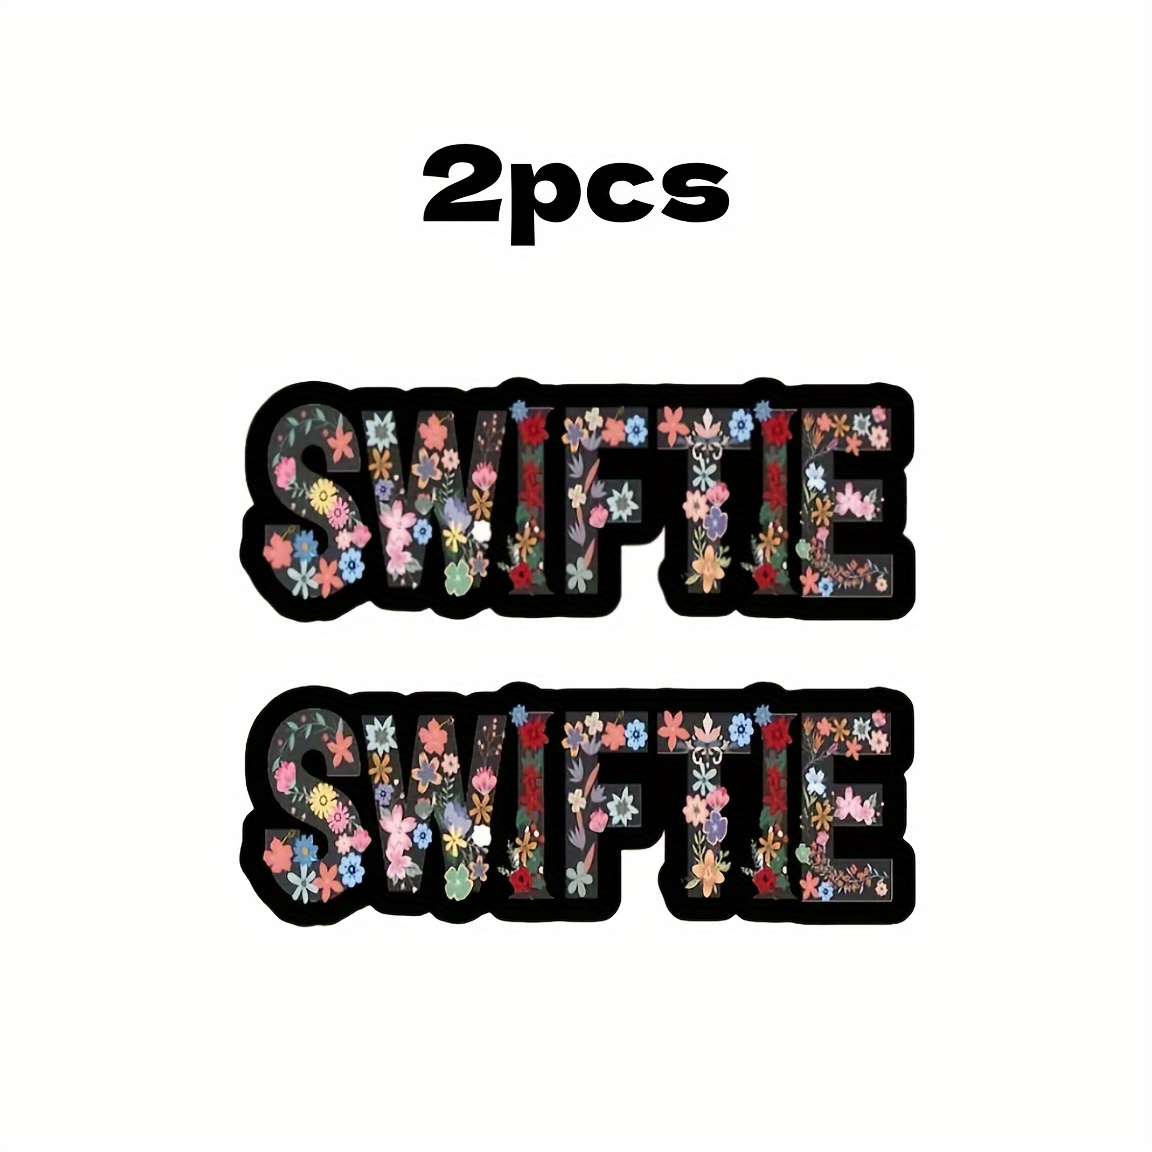 Swiftie Stickers for Sale